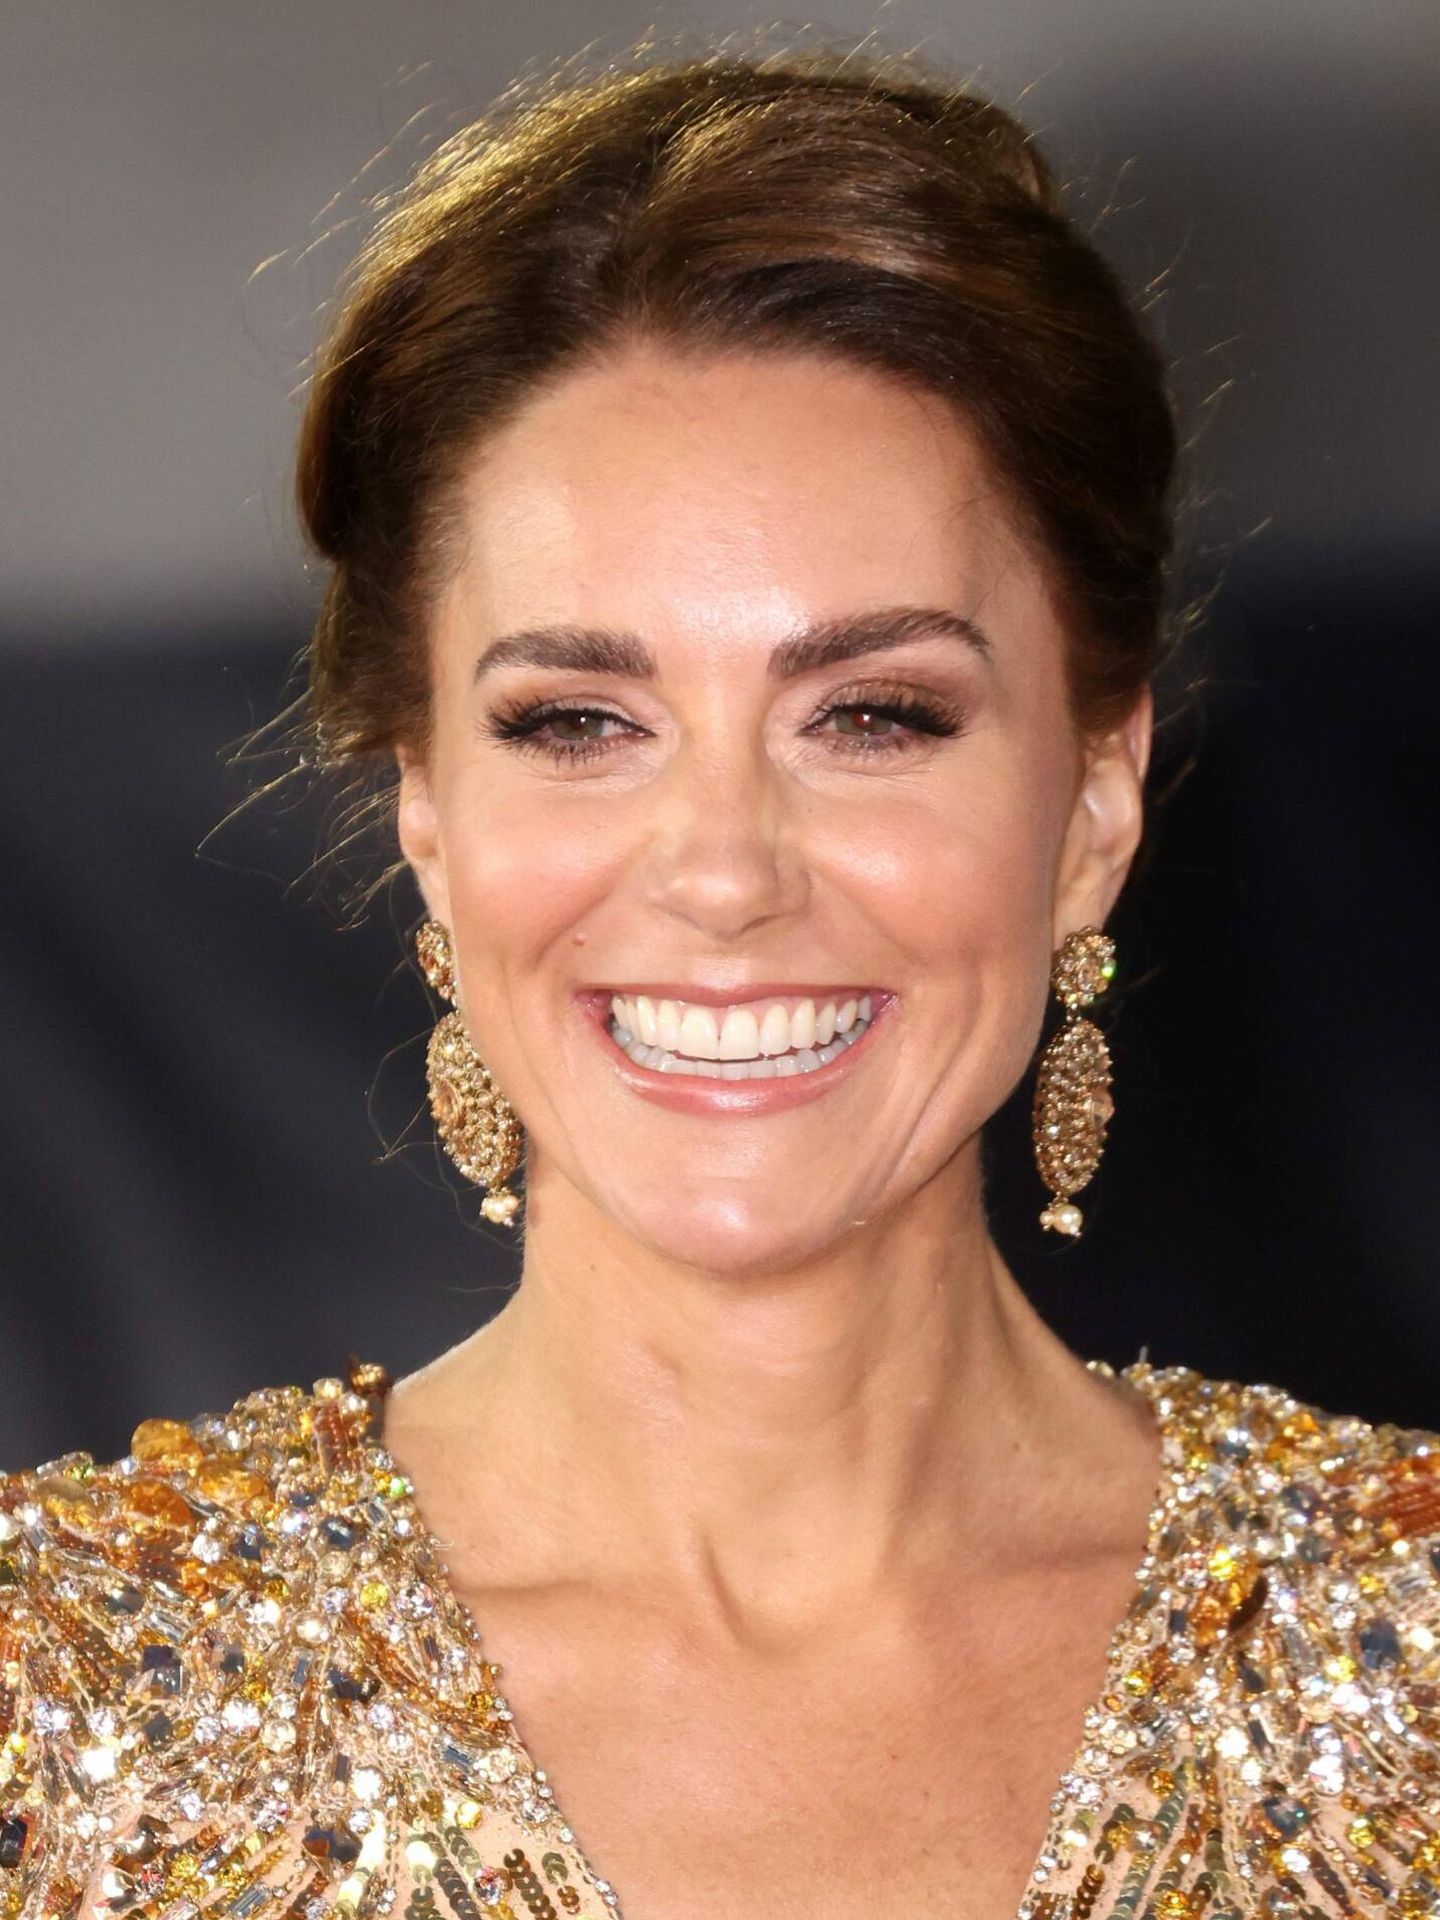 El maquillaje ahumado con sombras satinadas en tonos dorados de Kate Middleton potenció la sensación de rostro iluminado. (Cordon Press)